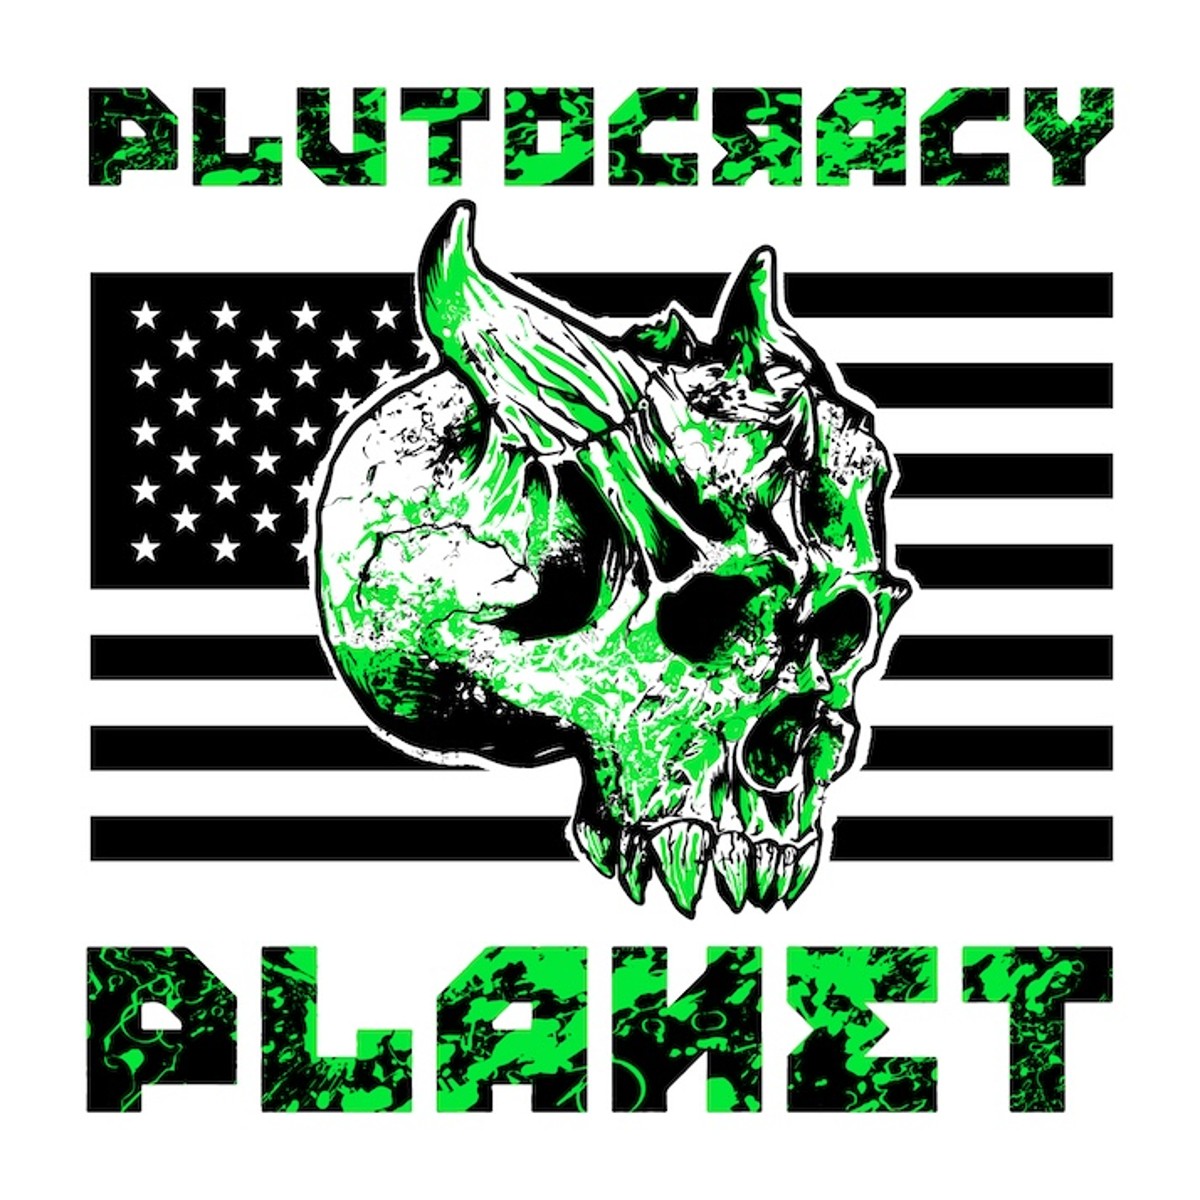 Plutocracy Planet ‘Plutocracy Planet’ album artwork